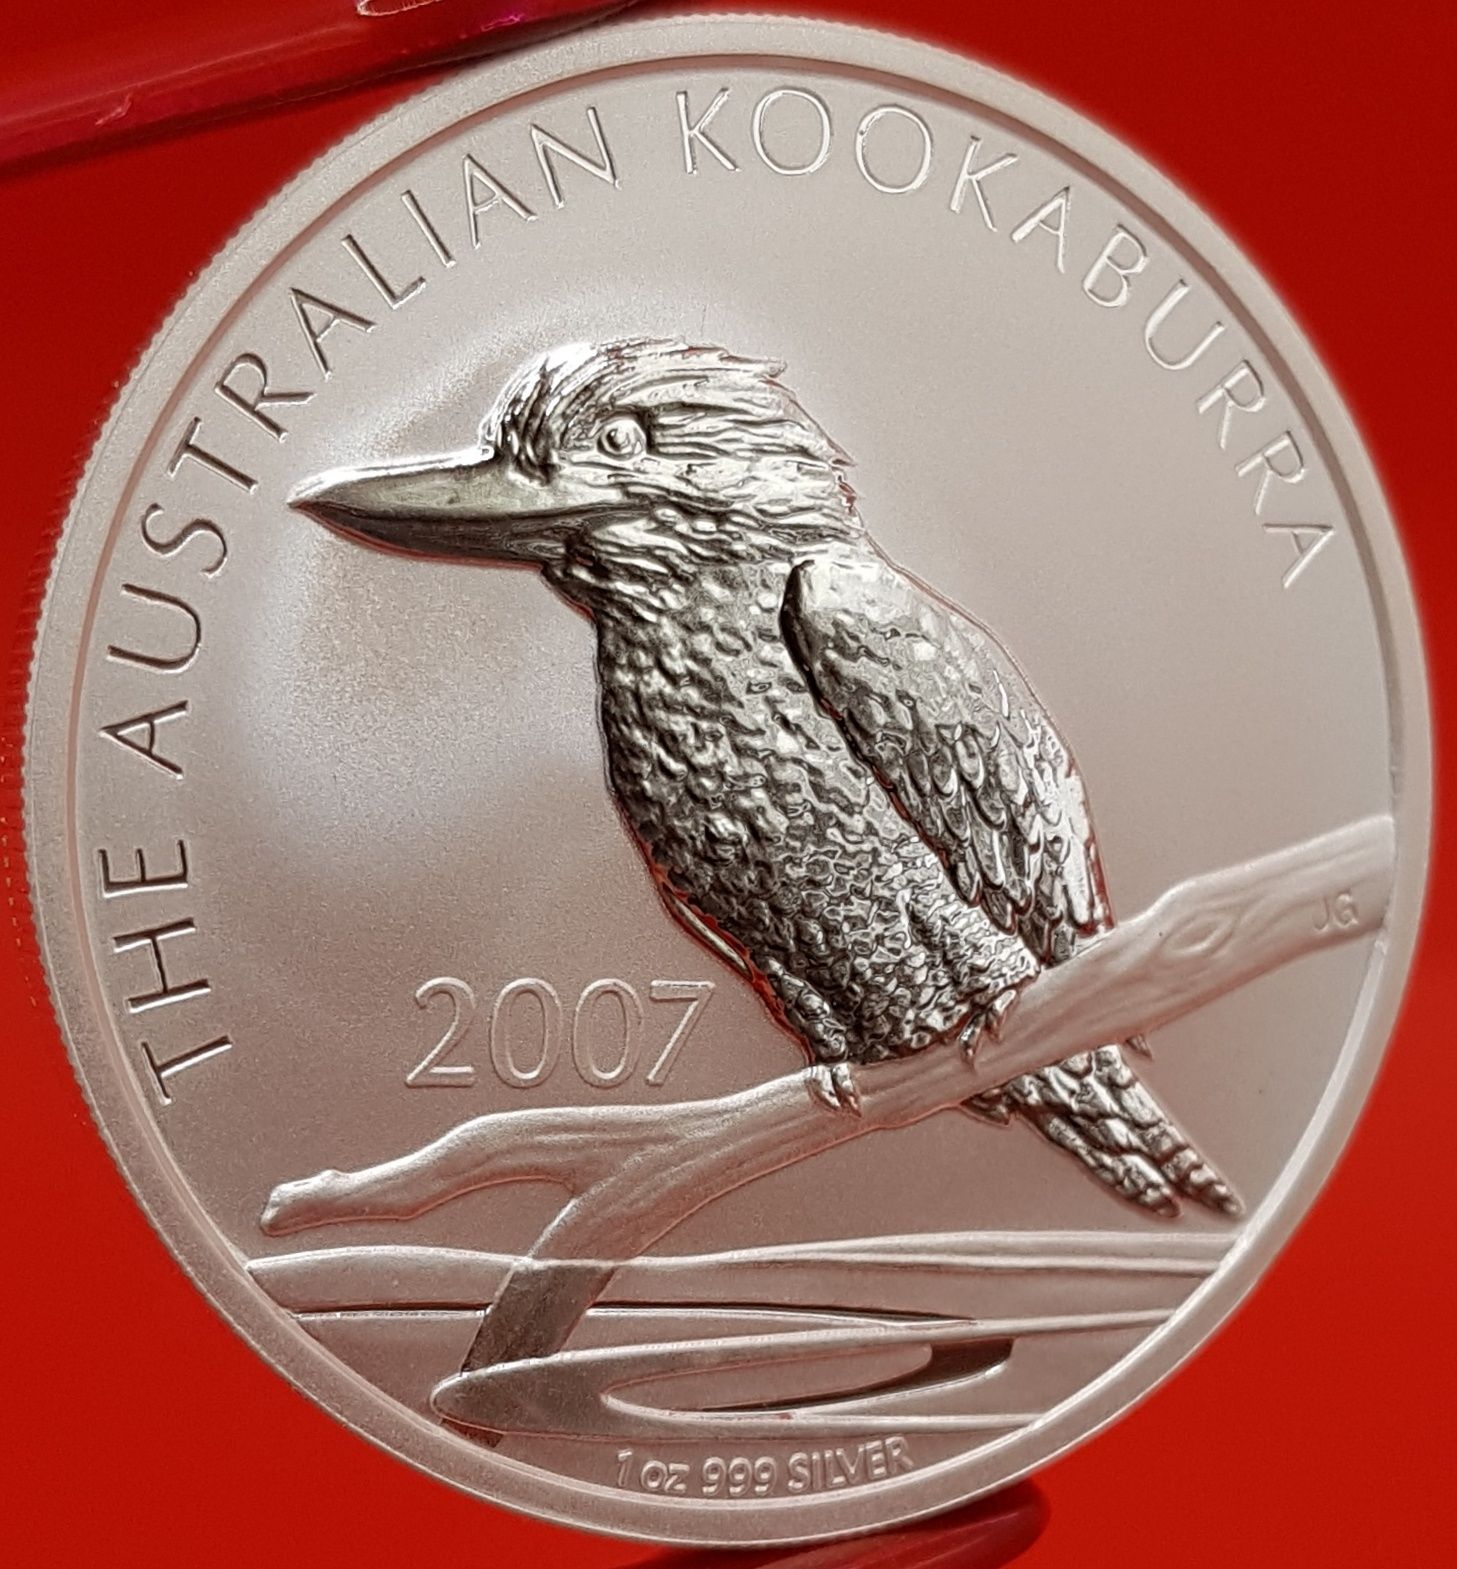 Kookaburra 1990 - 2024, aproape TOATA, monede lingou argint 999